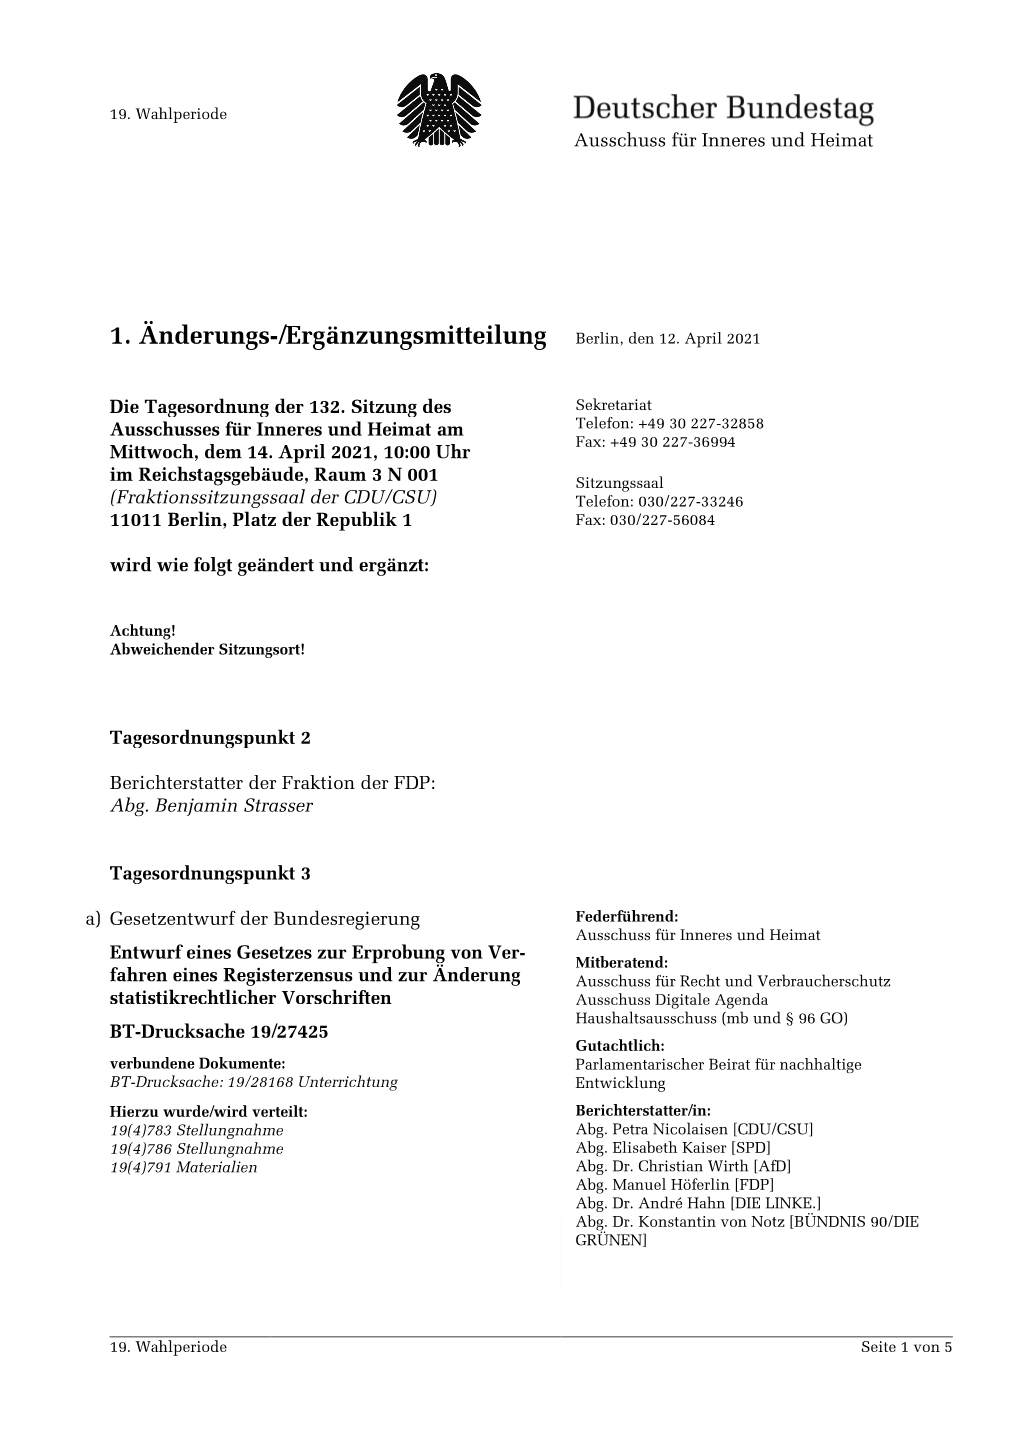 1. Änderungs-/Ergänzungsmitteilung Berlin, Den 12. April 2021